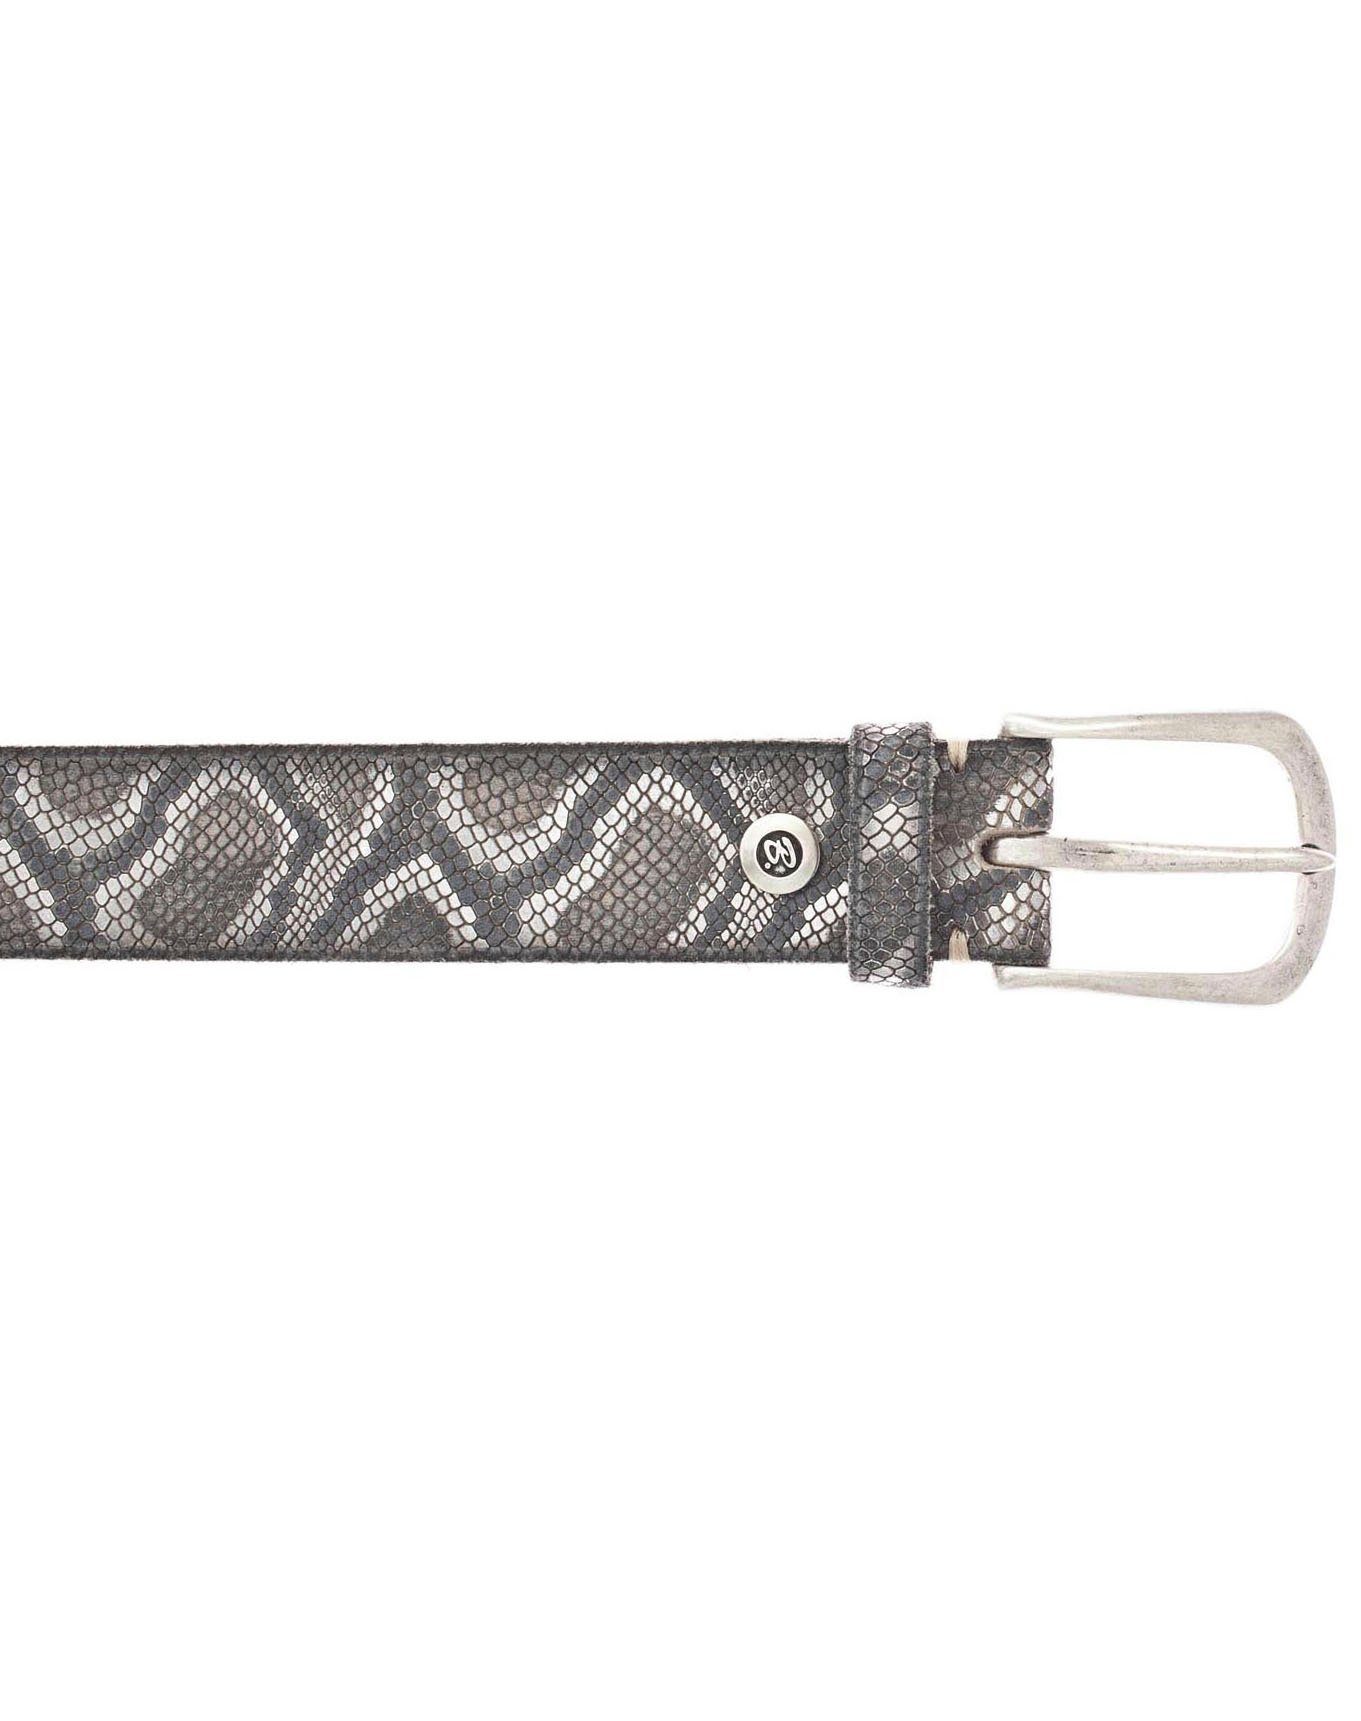 Snakeprägung mit Metallic b.belt Ledergürtel schwarz-silberfarben